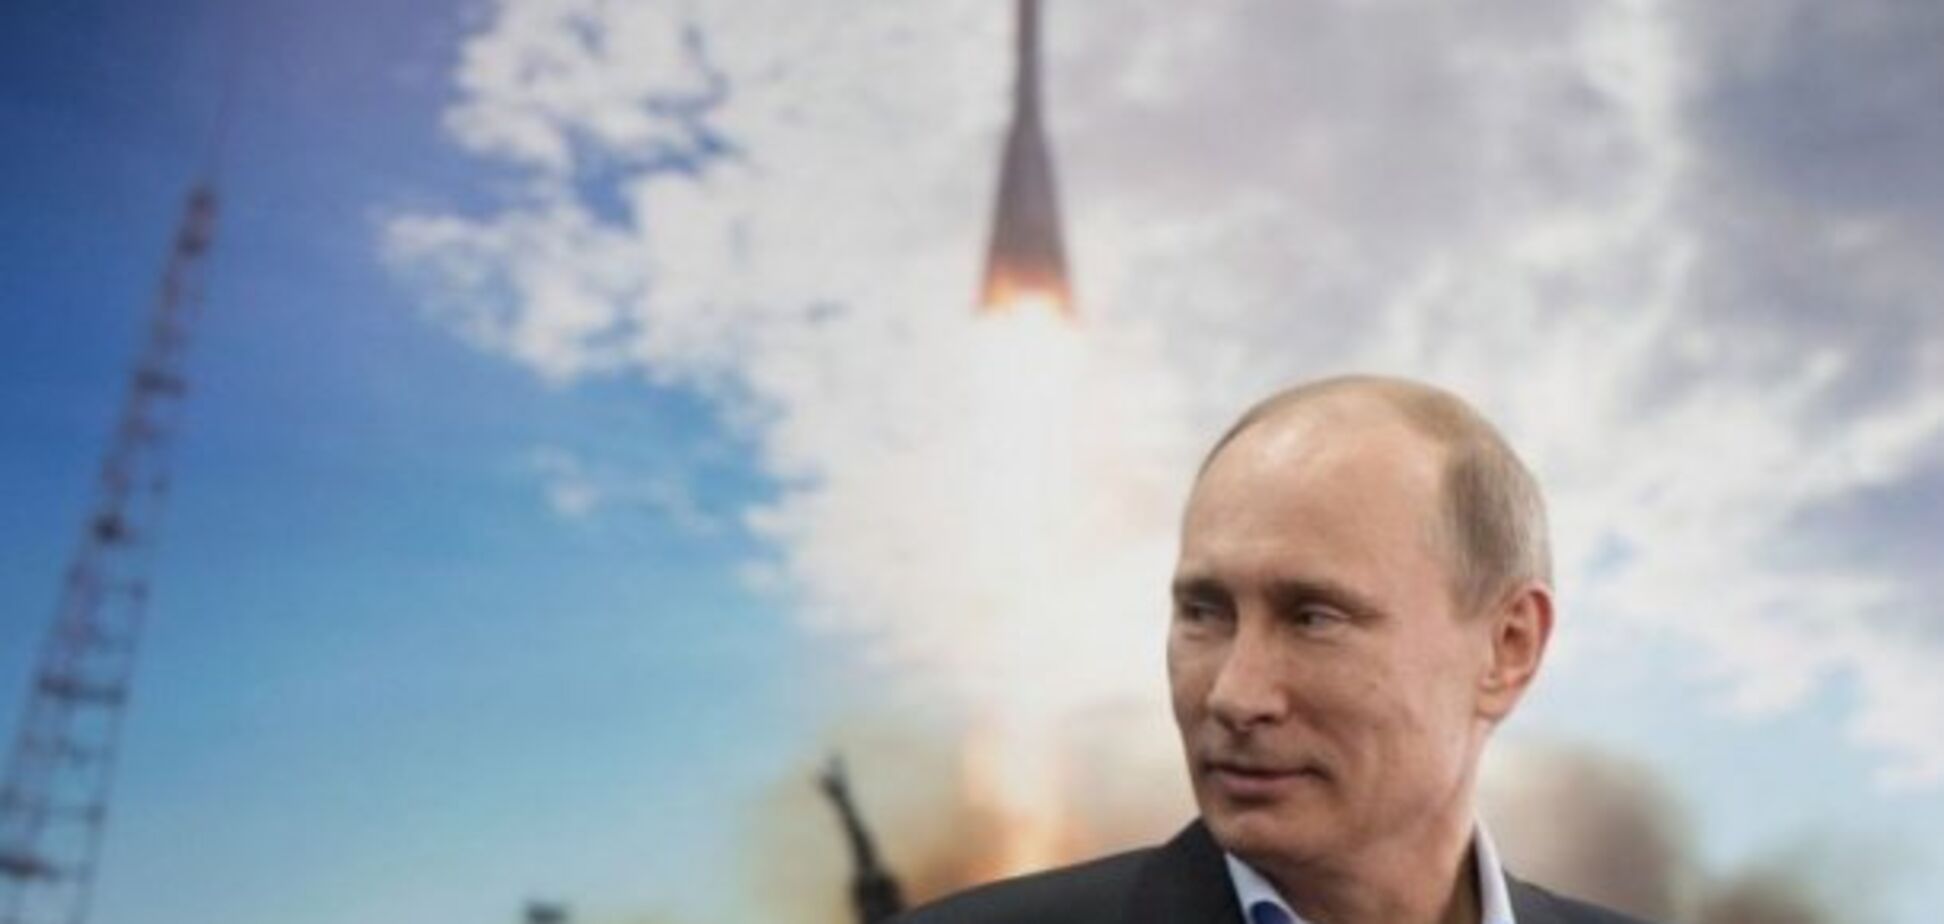 Мощнейшее оружие в мире: чем хвастался Путин